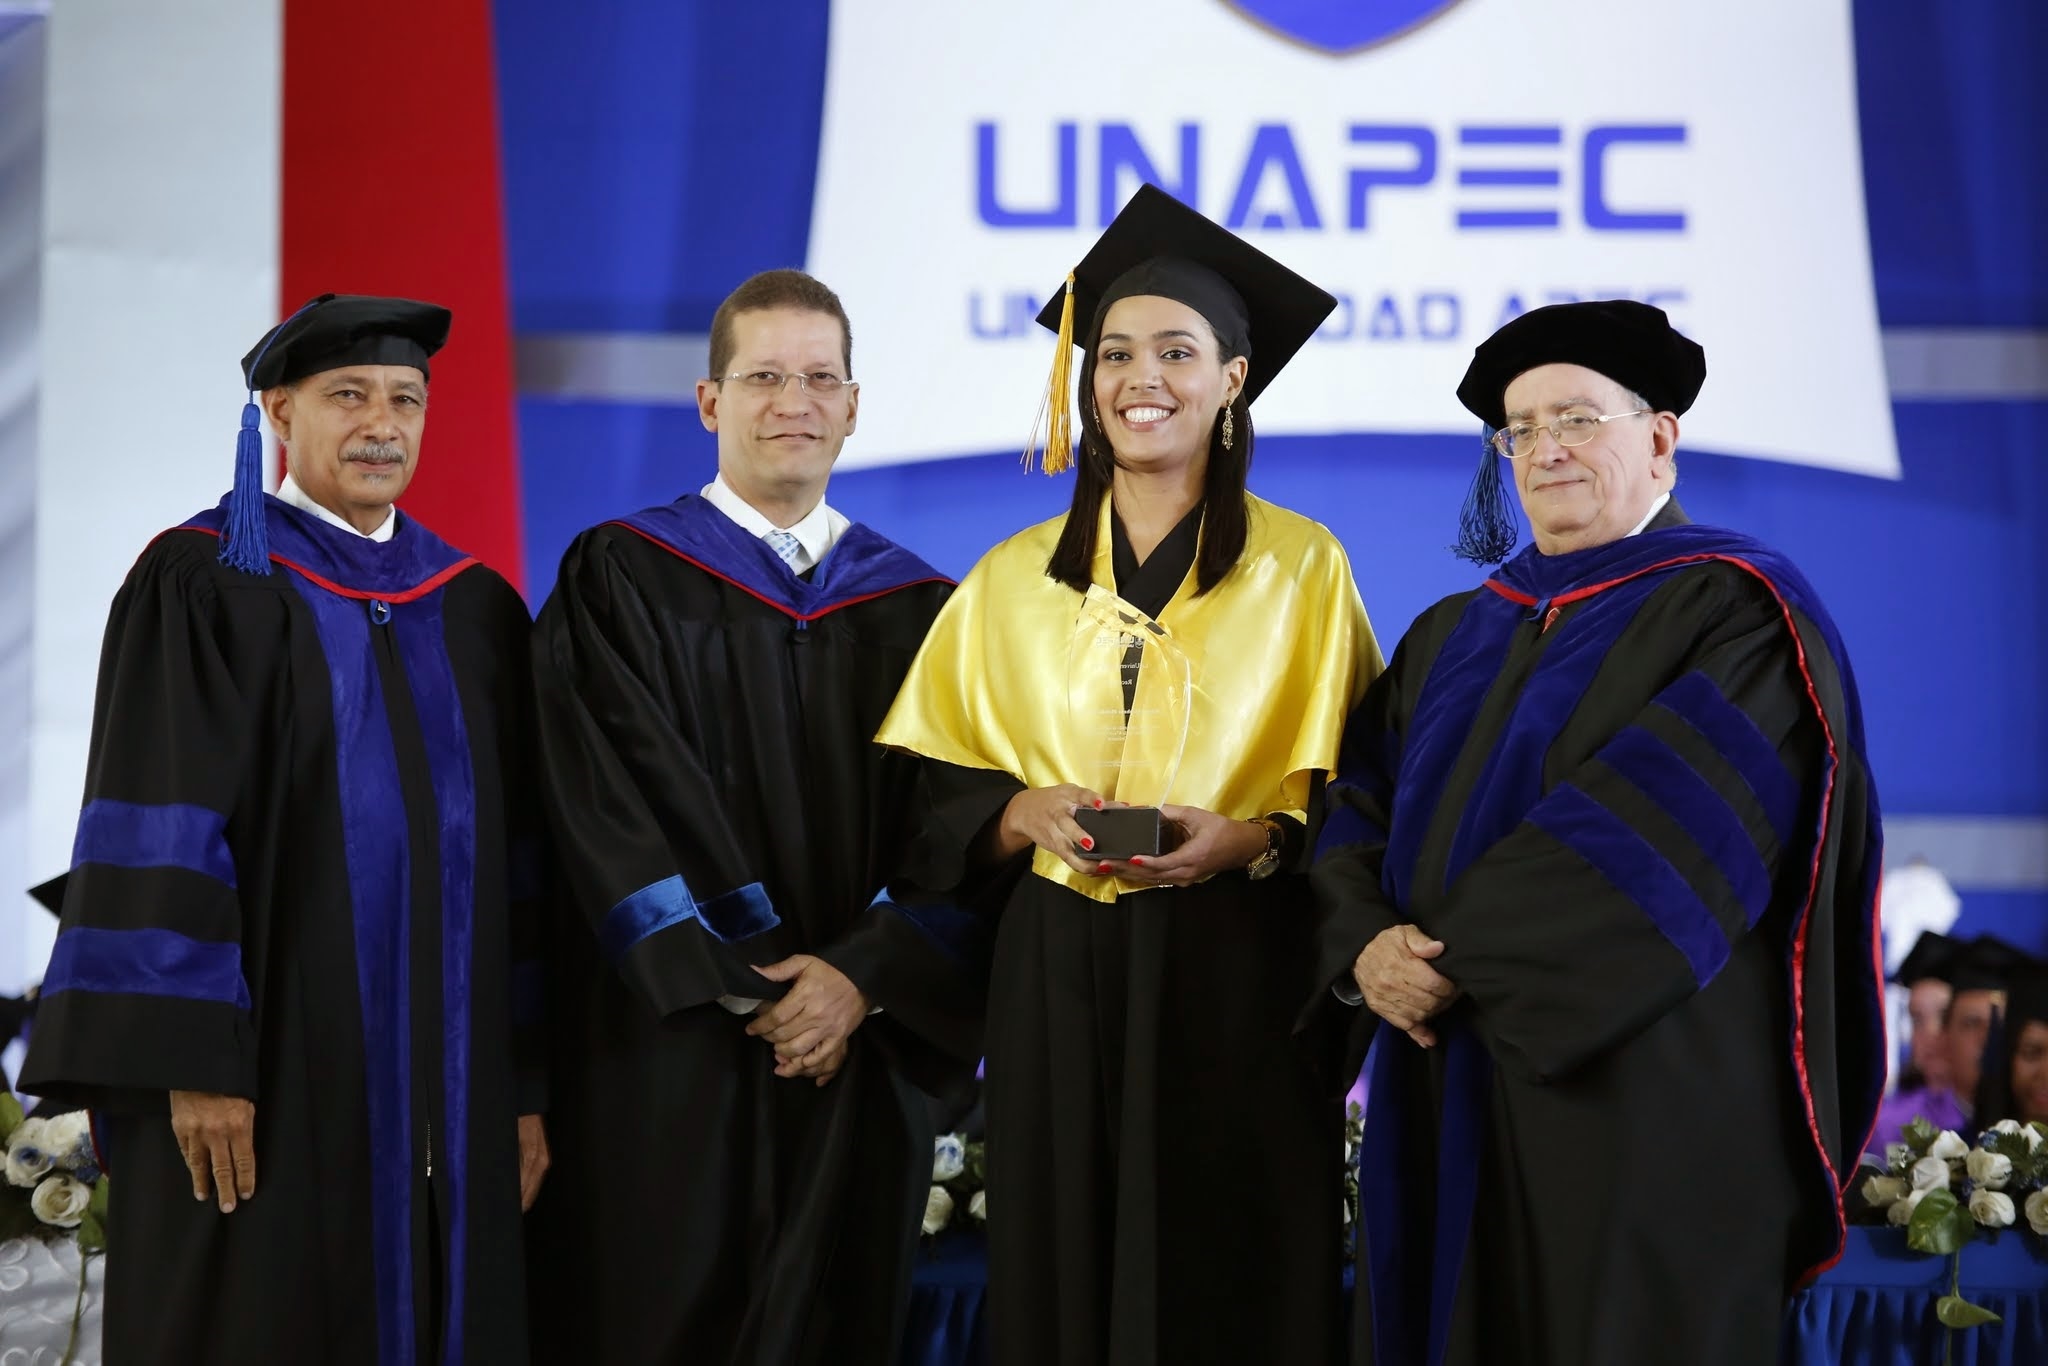 Raquel Blondet de León, egresada de Administración de Empresas, con el índice académico más alto de la ceremonia, mientras recibía el reconocimiento por su desempeño, de parte de las autoridades de UNAPEC